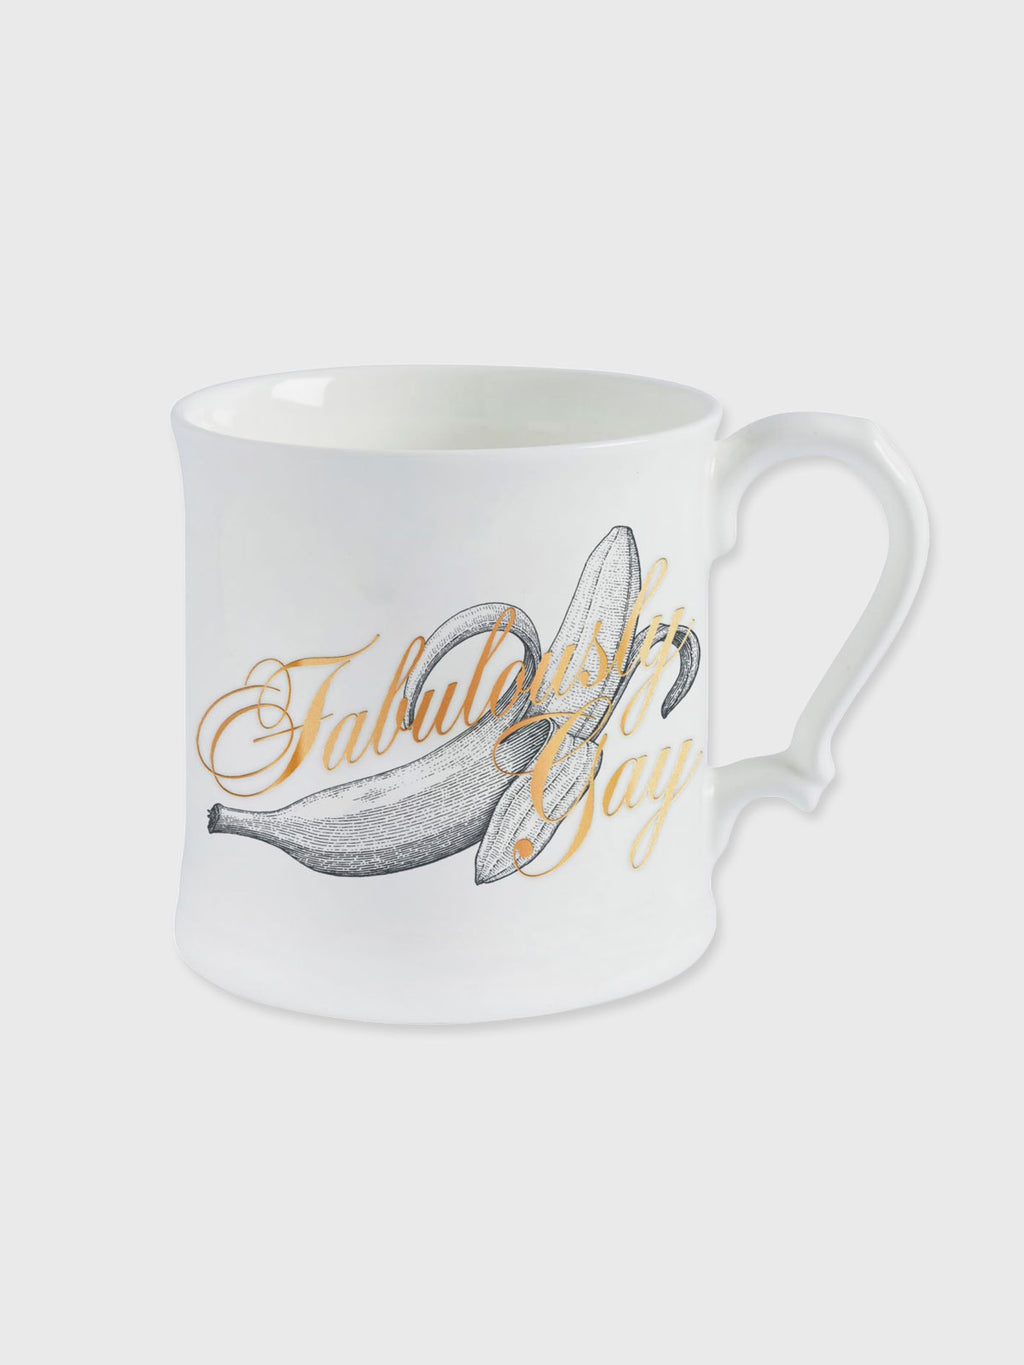 Cheeky Mare - Fabulously Gay Mug - 18ct Gold